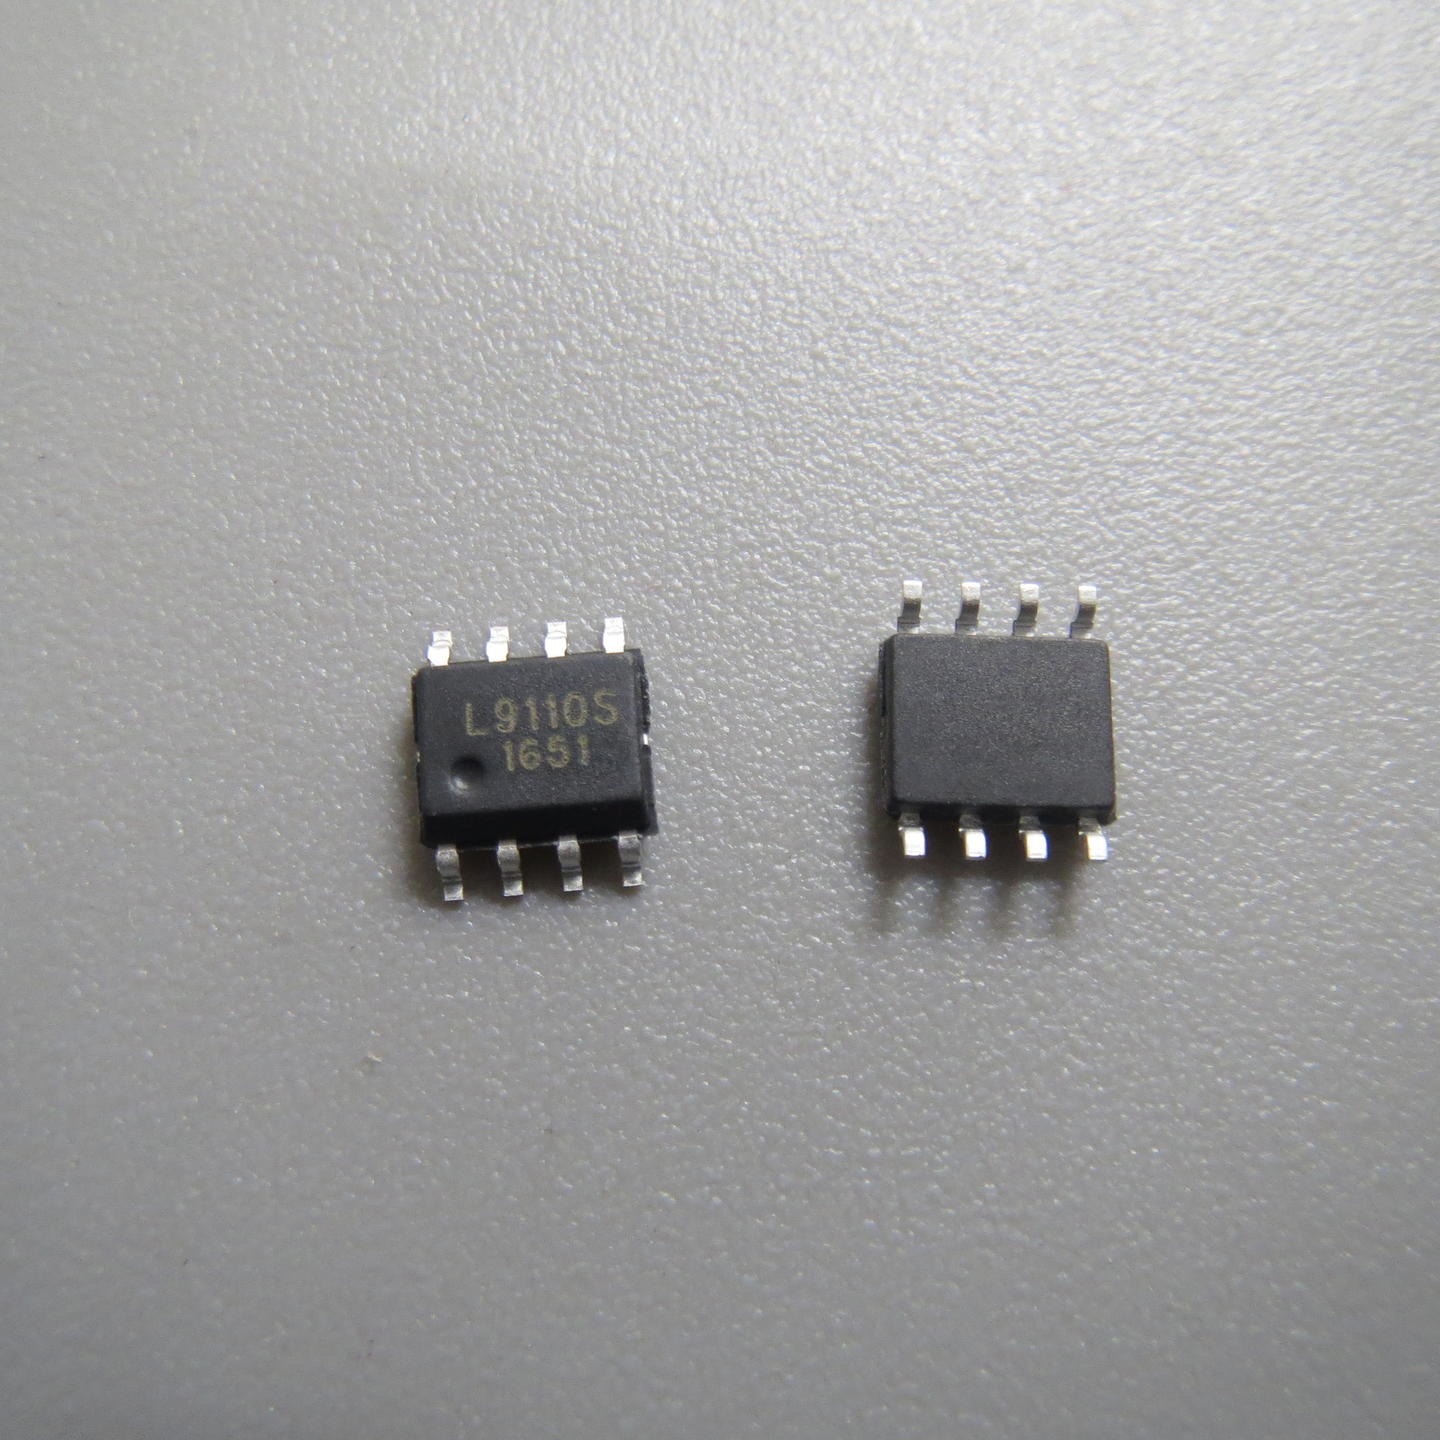 L9110S 代理  触摸芯片 单片机  电源管理芯片 放算IC专业代理商芯片配单